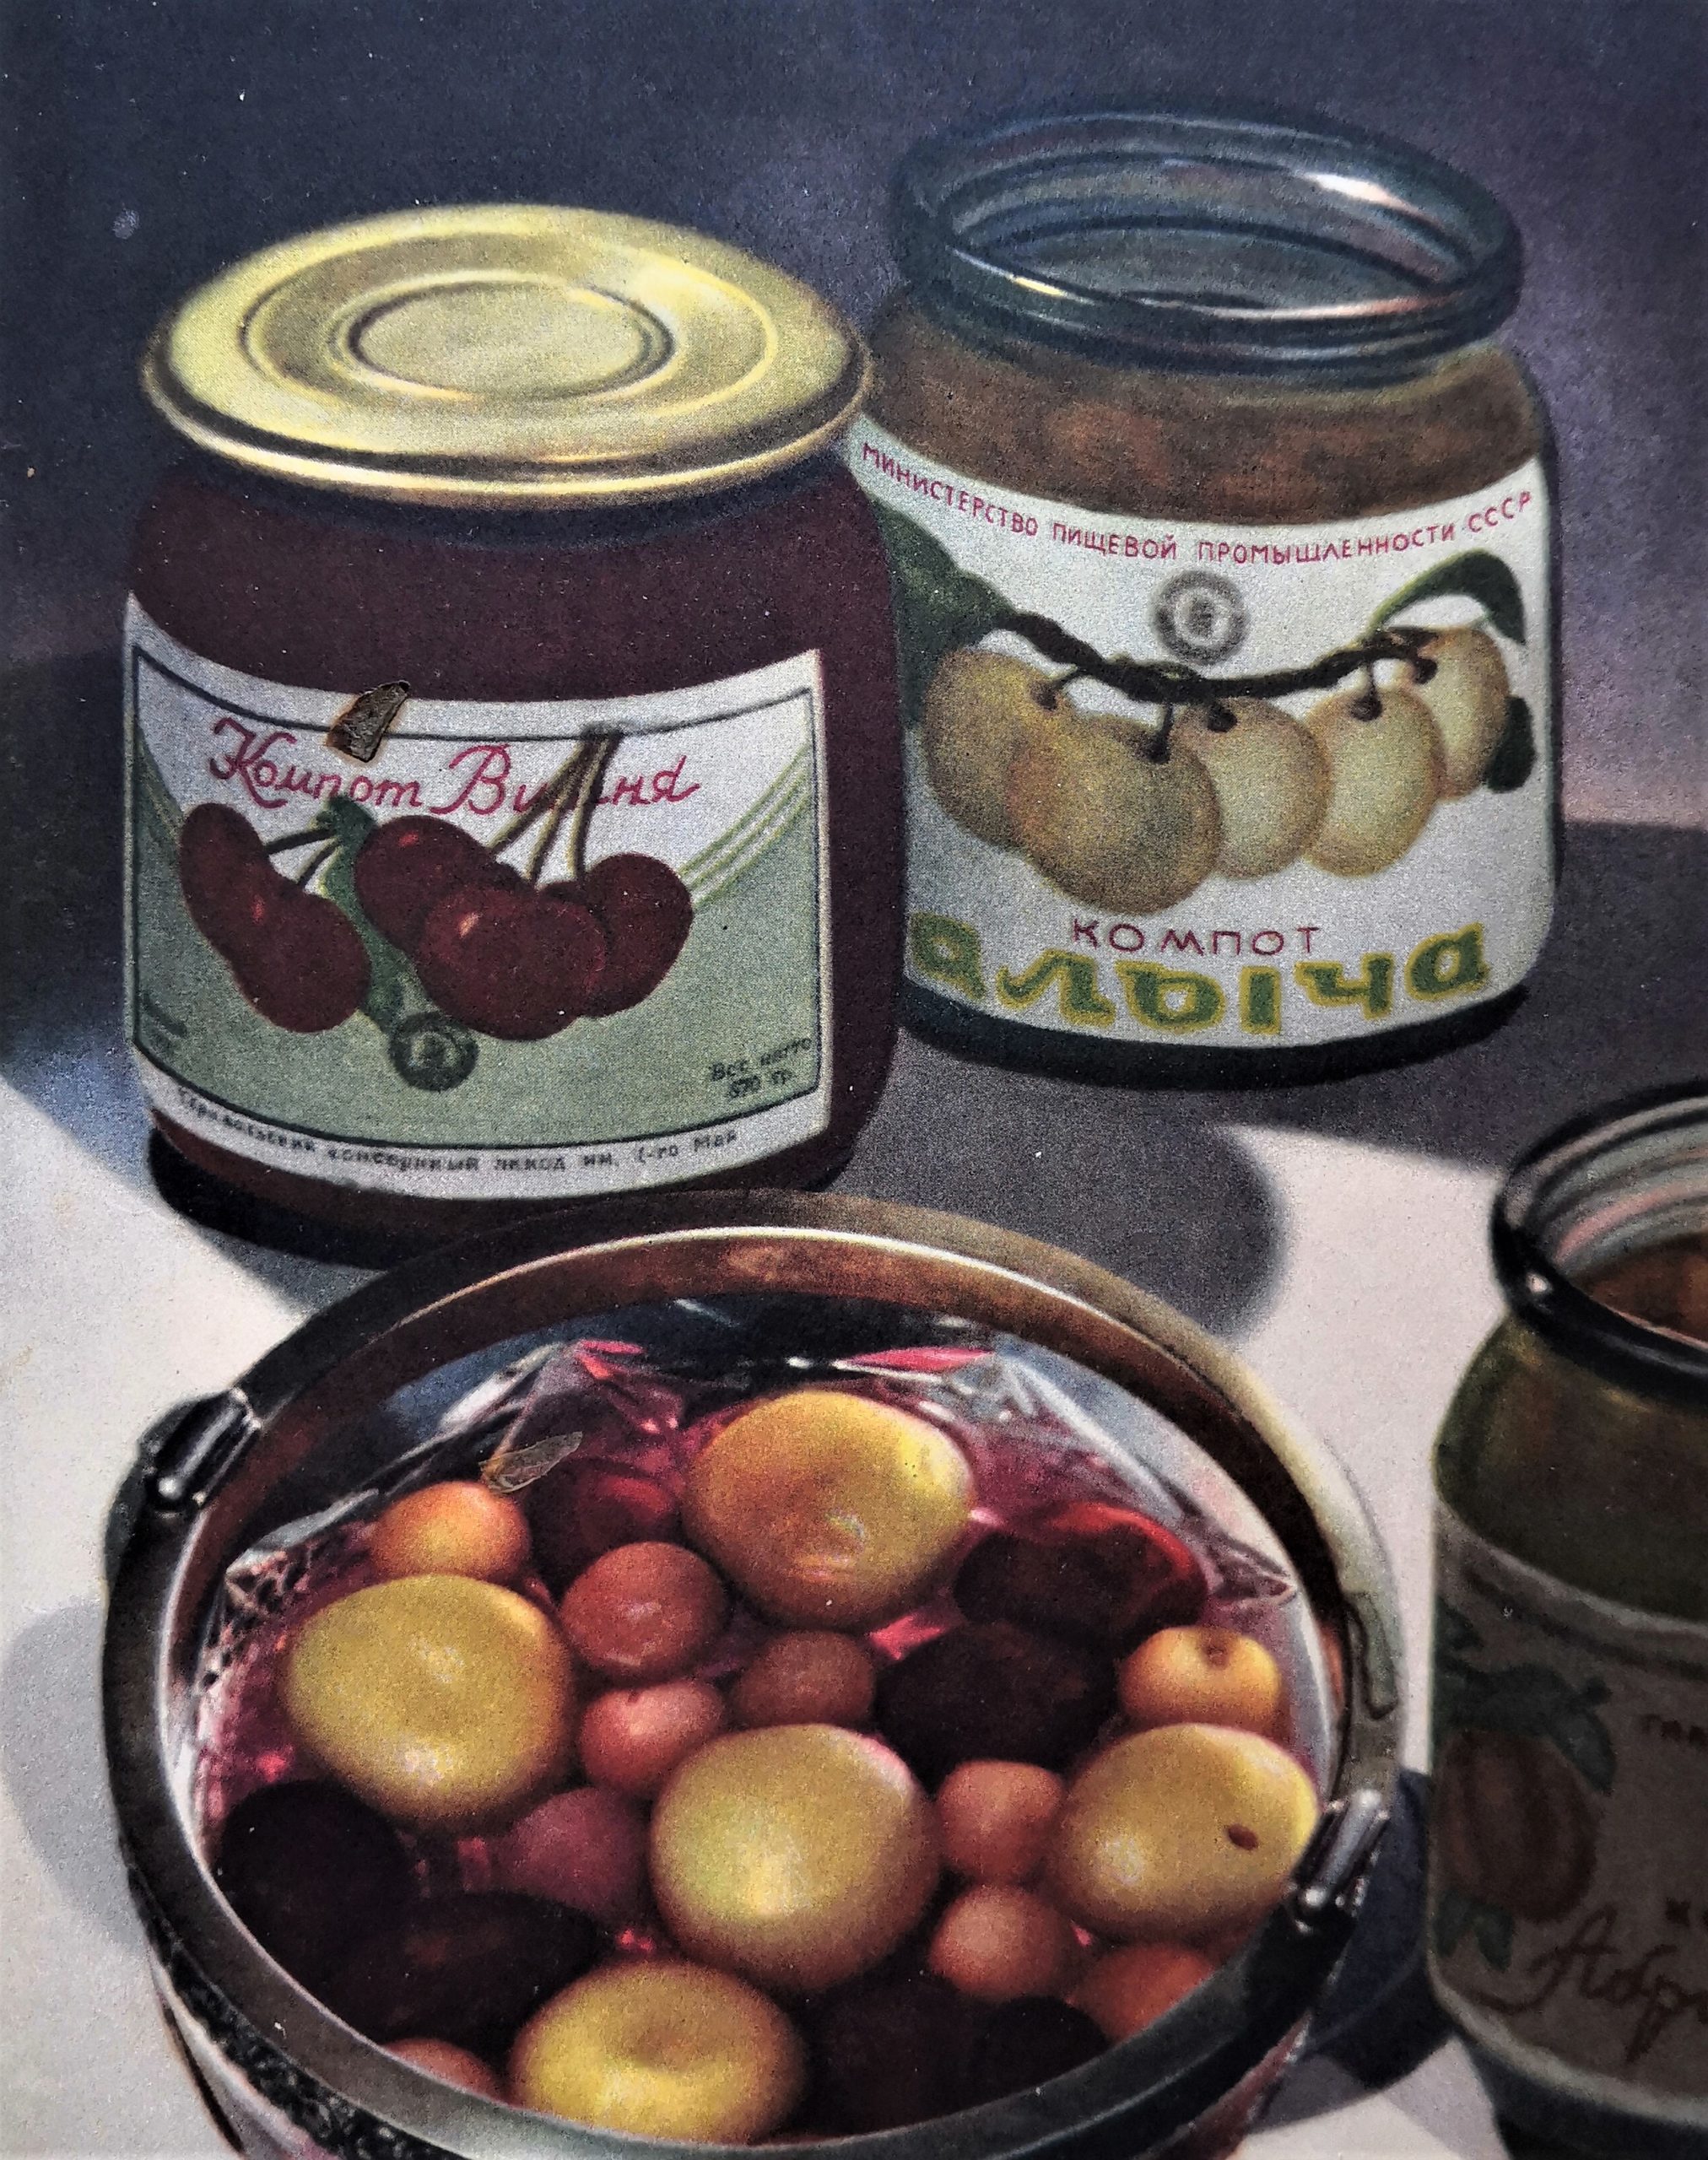 Продукты в советское время, которые считались самыми вкусными